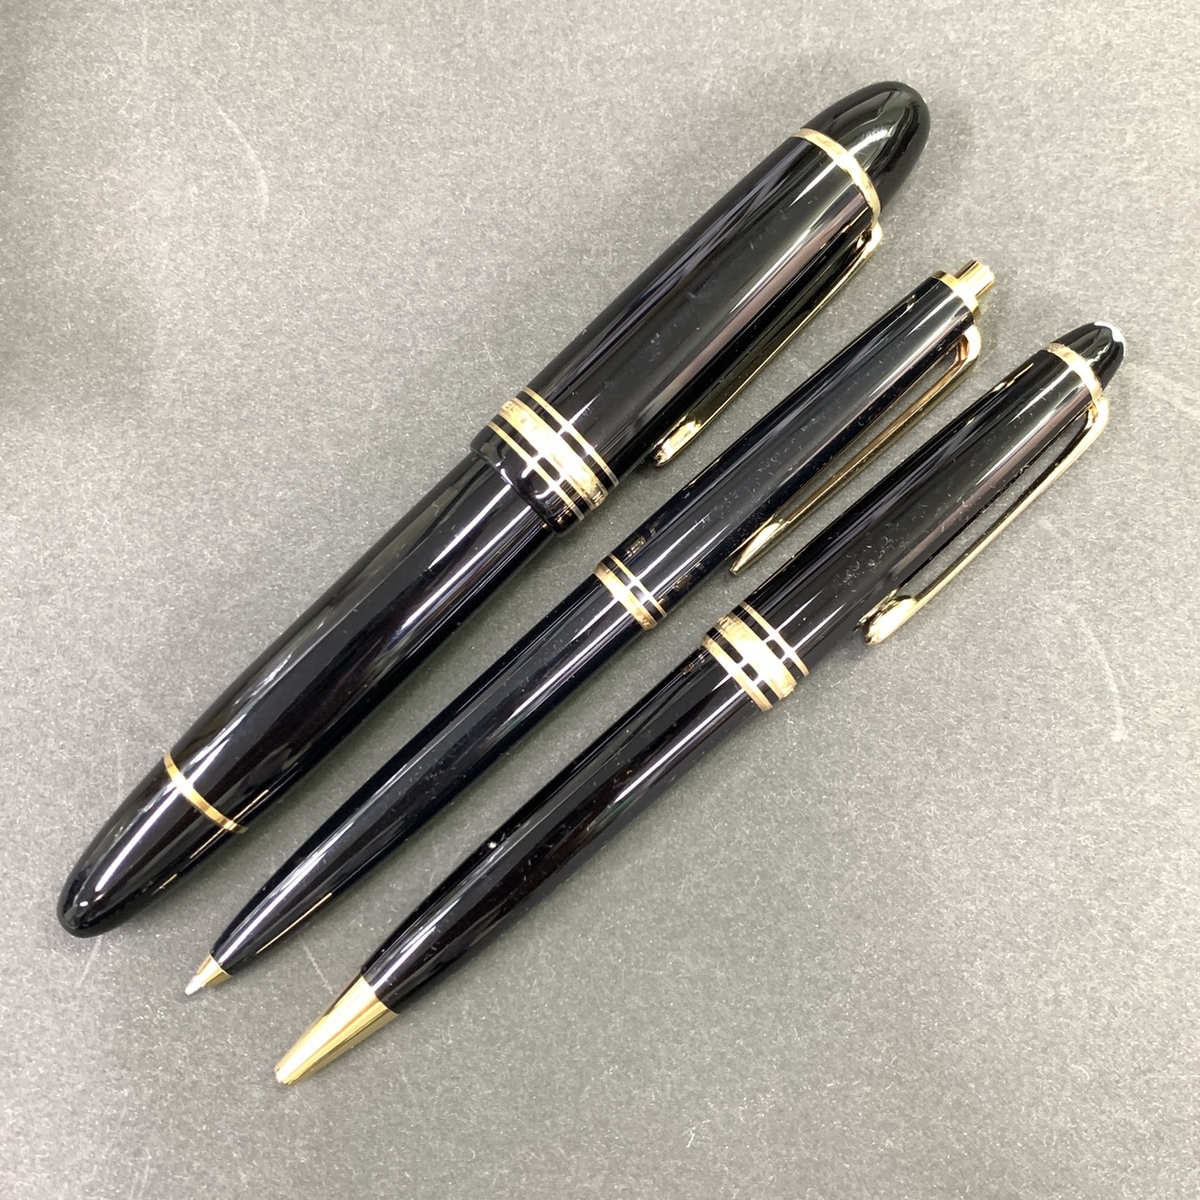 モンブランのペン先 K14 万年筆 ボールペン シャーペン 3点セットの買取実績です。